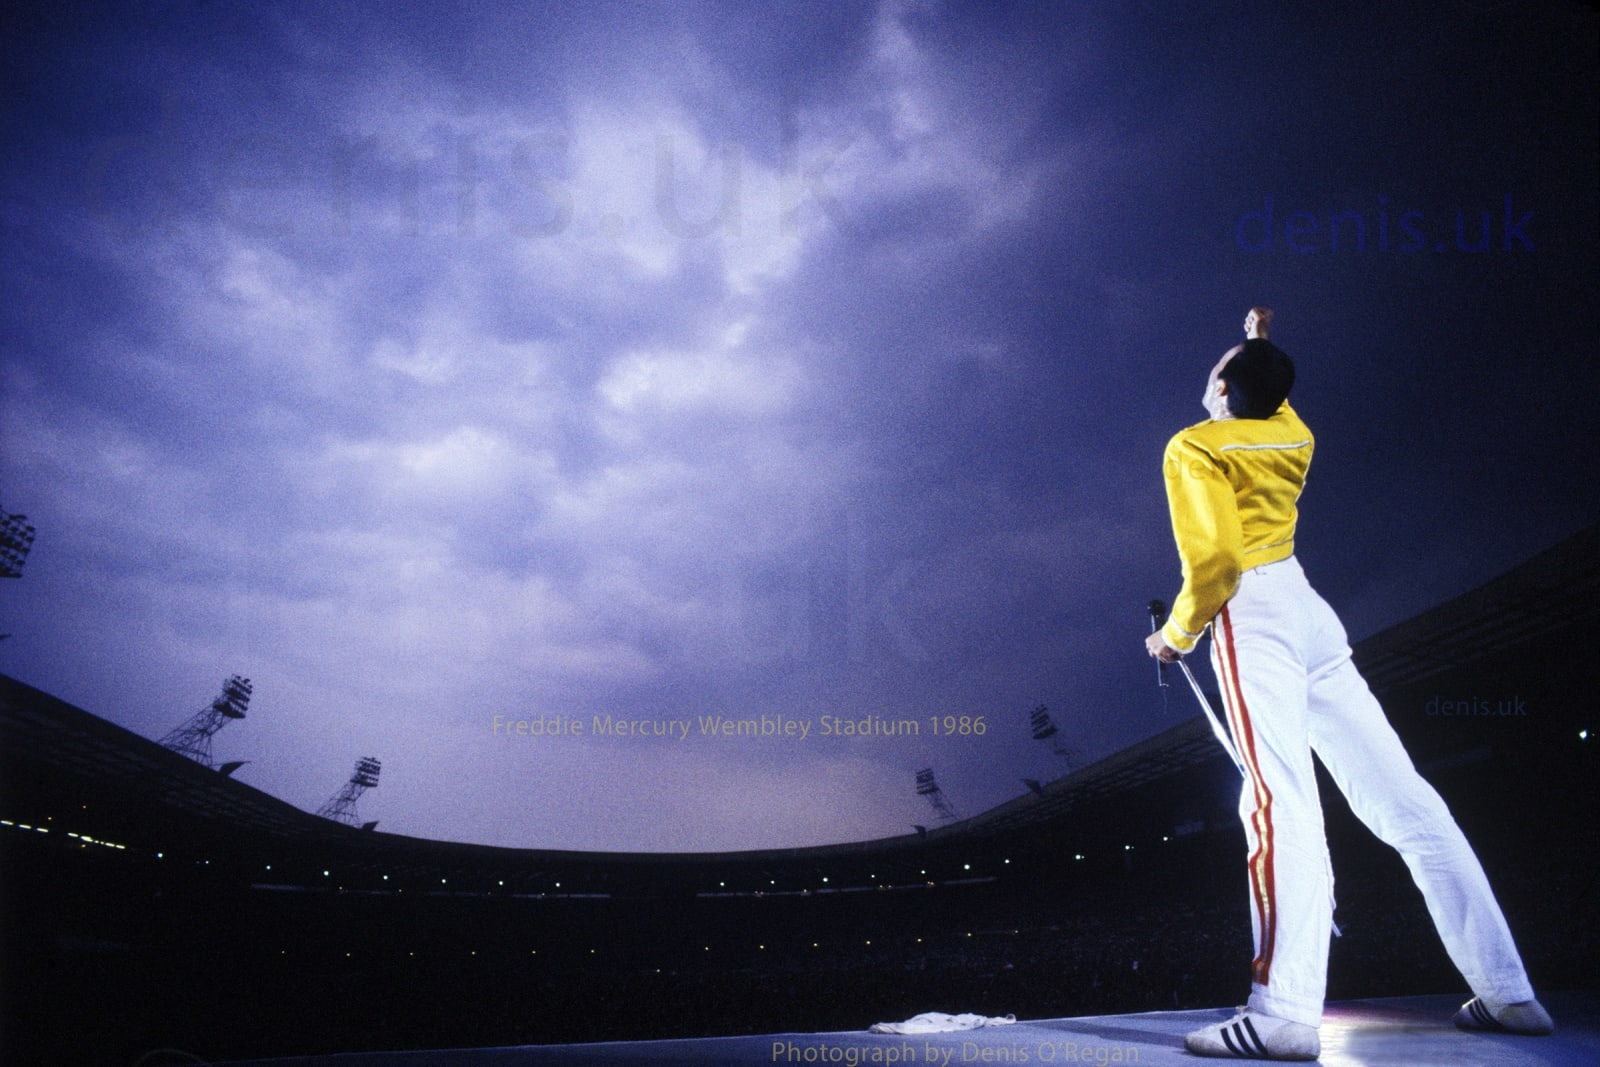 QUEEN, Freddie Mercury Wembley Stadium, 1986